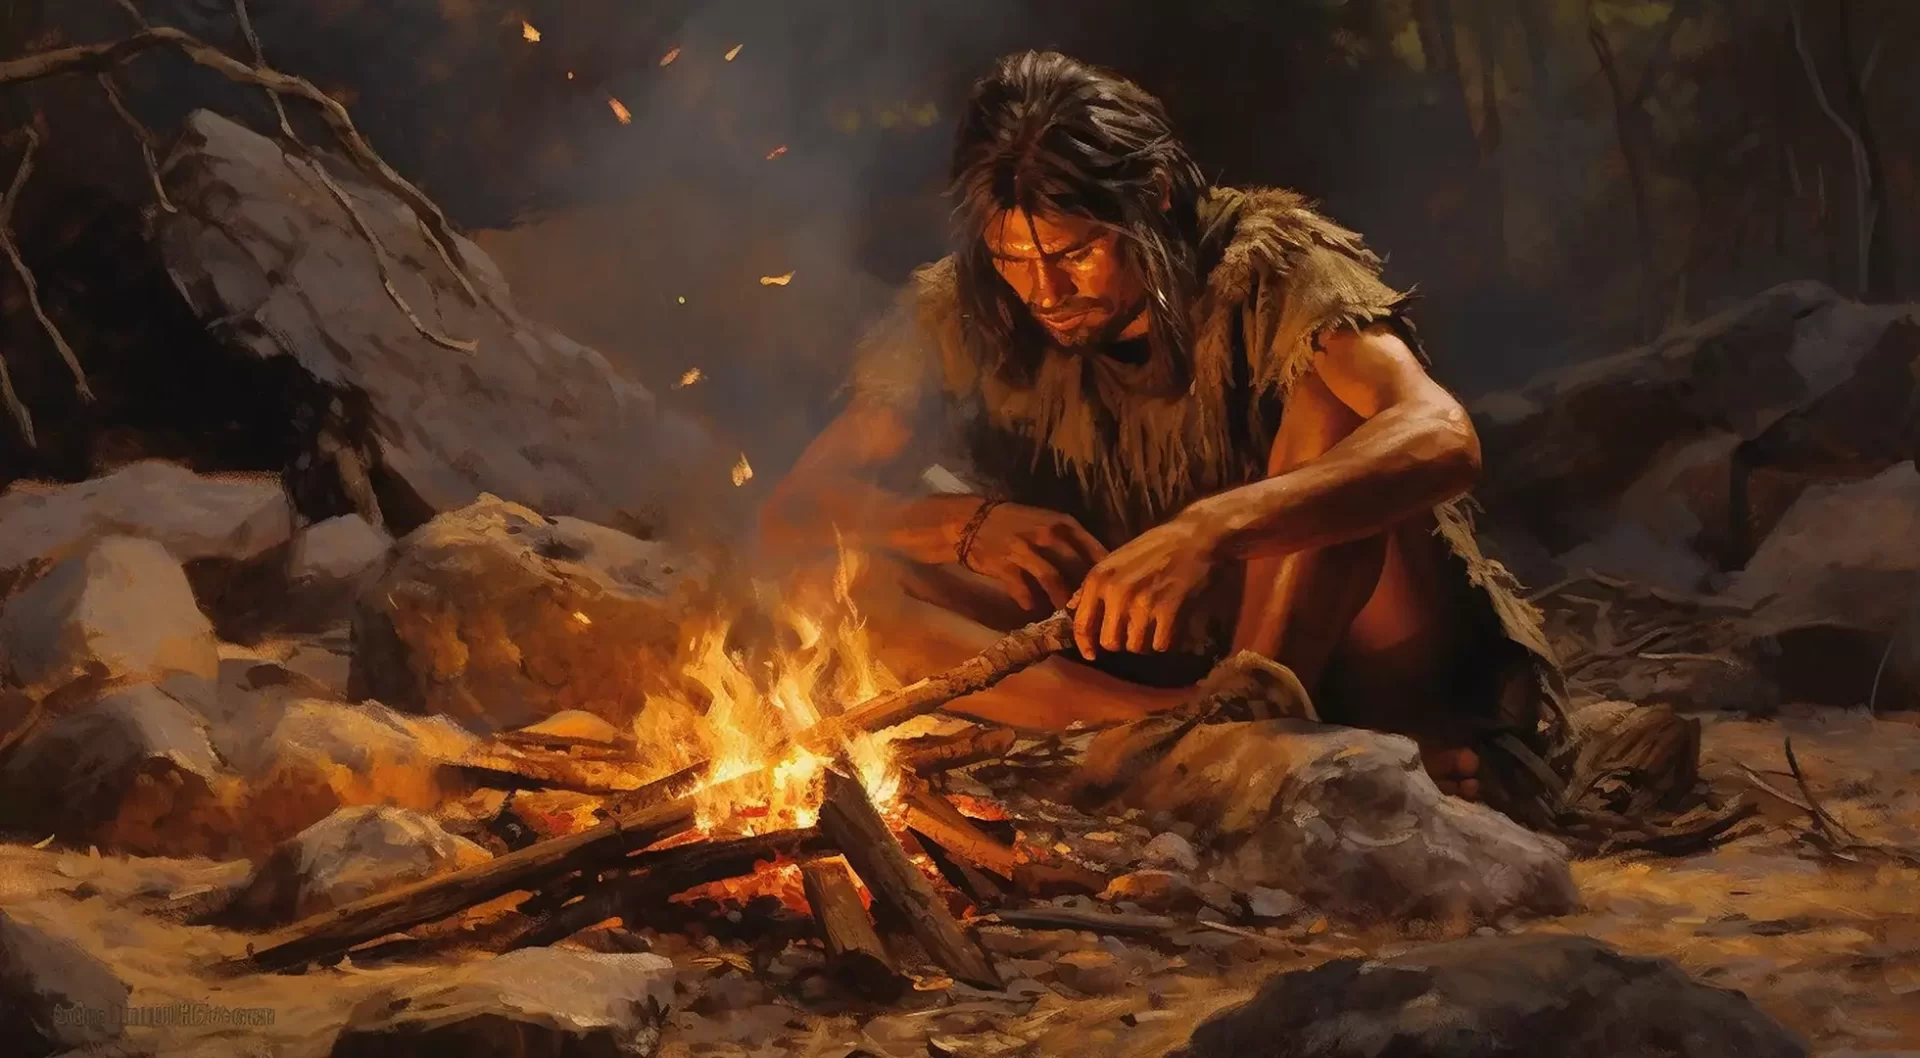 Representación artística de un hombre prehistórico haciendo fuego